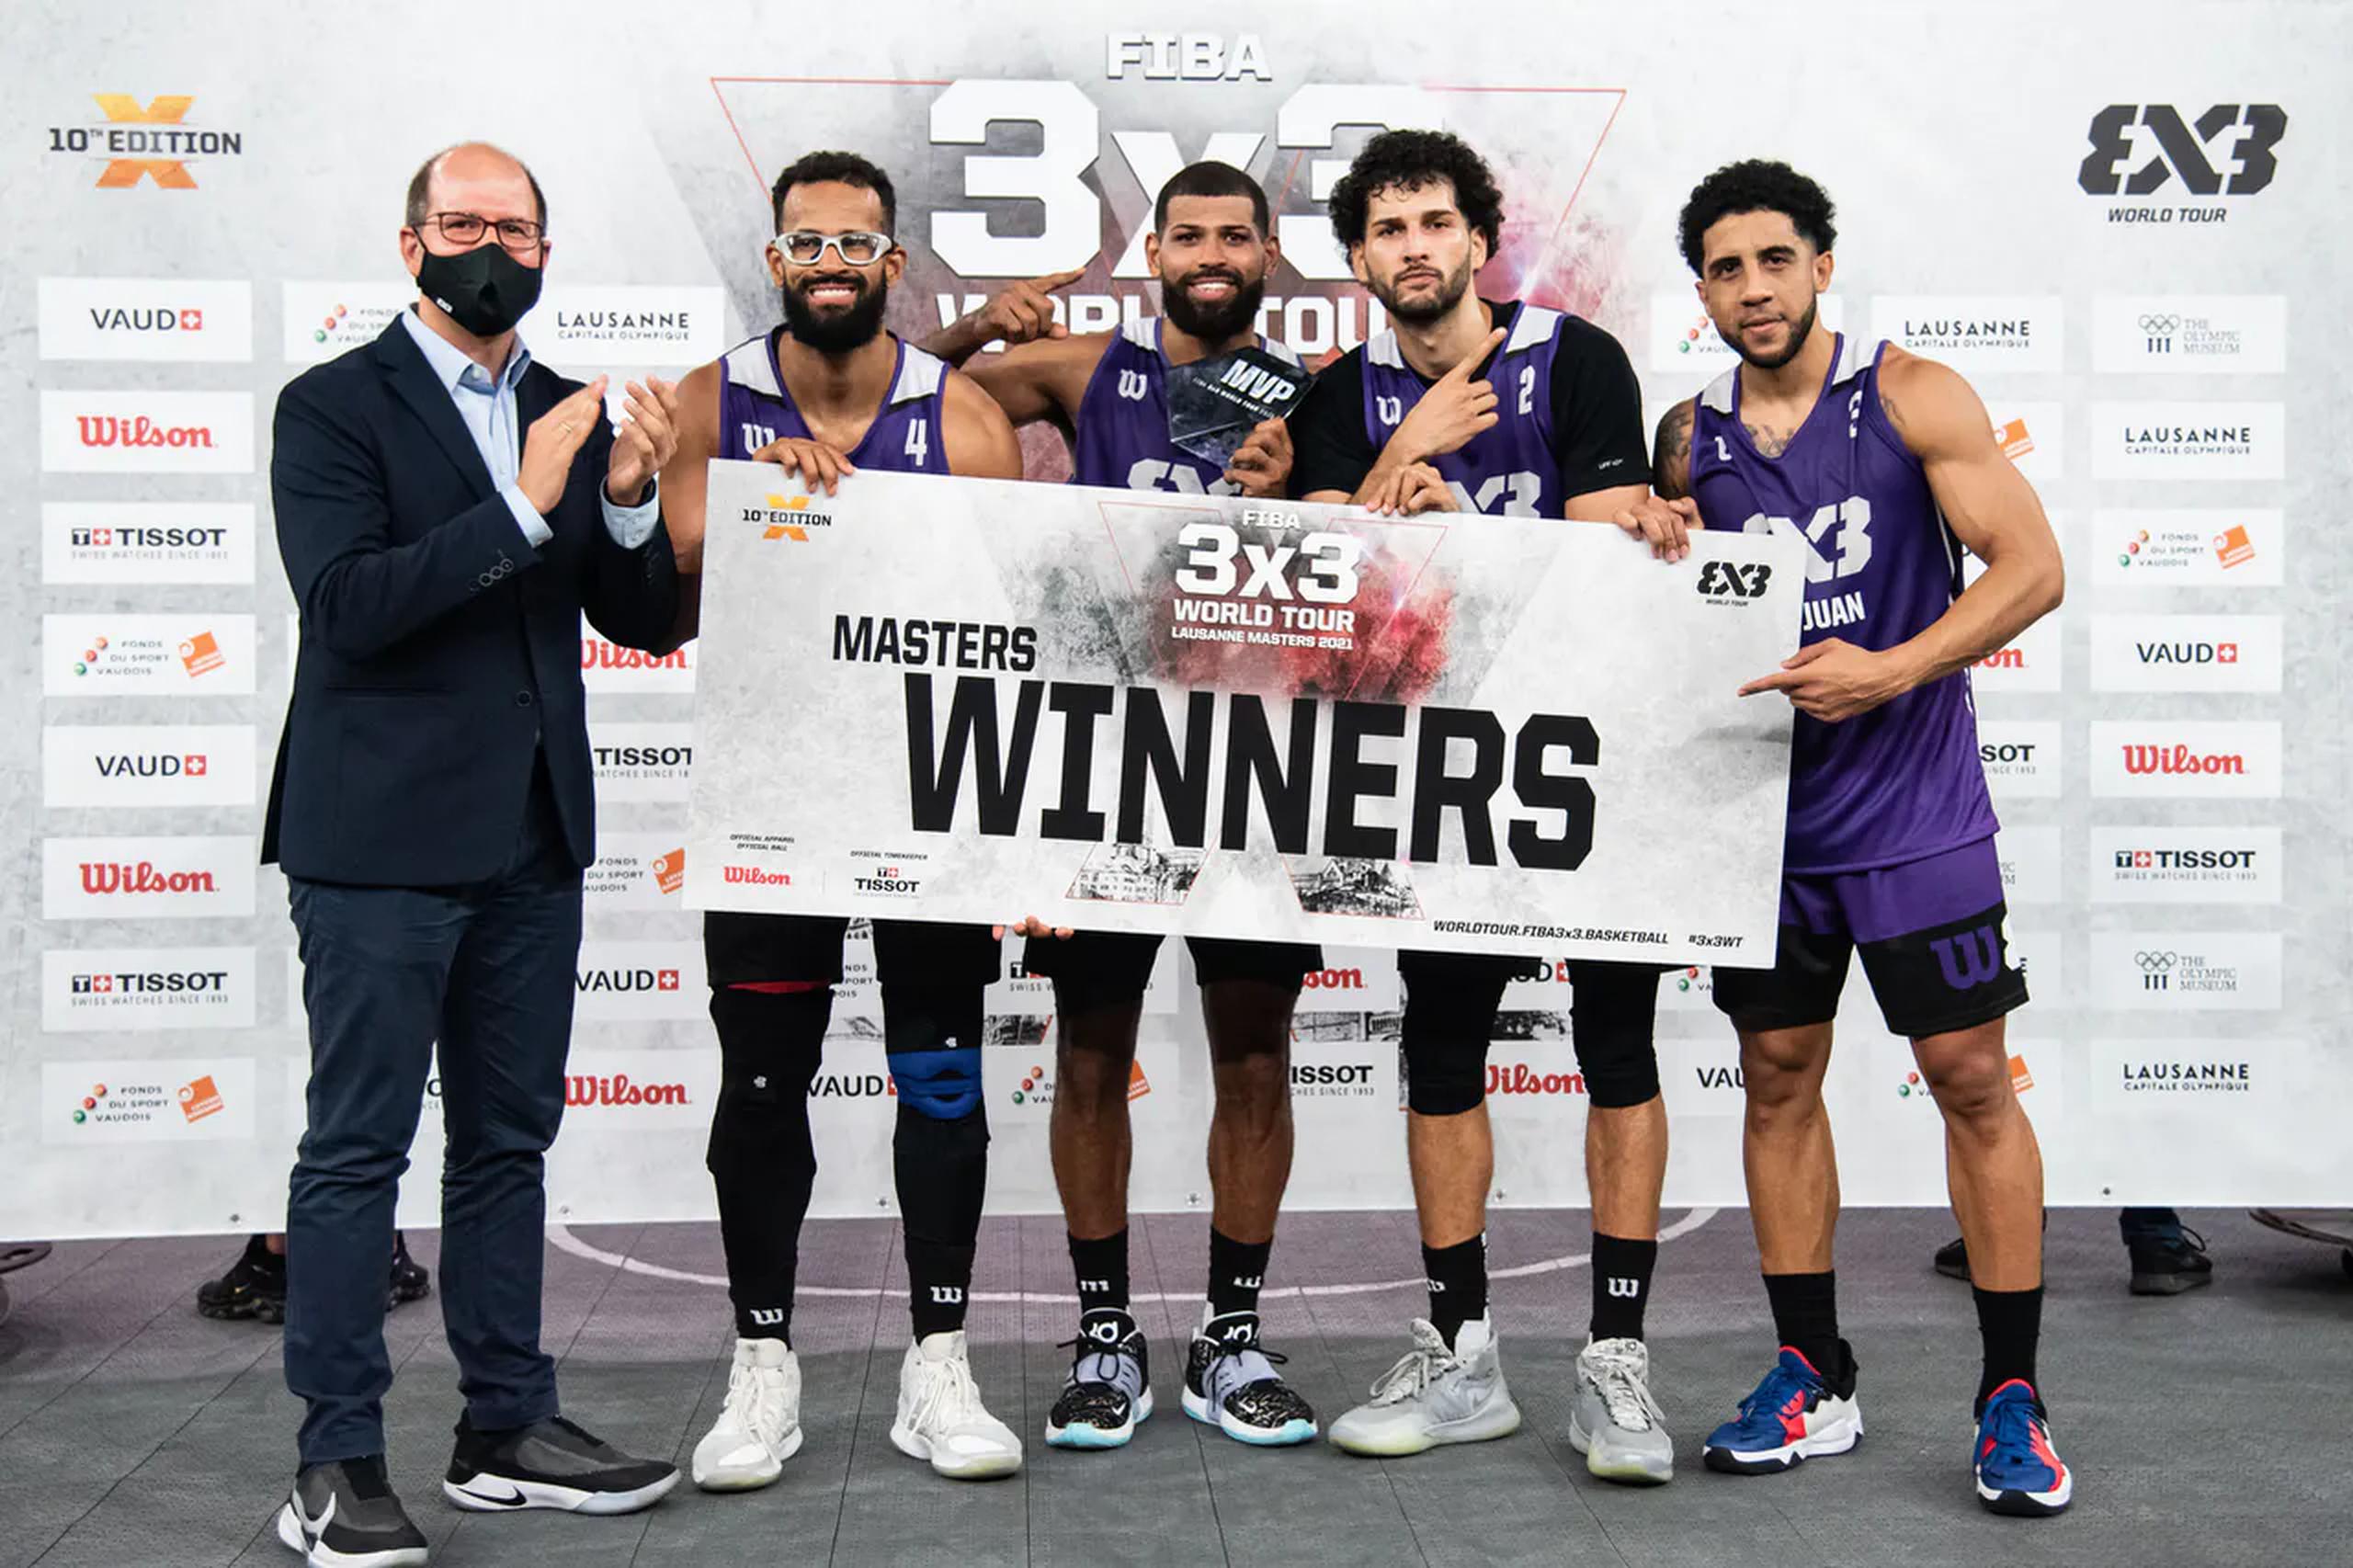 El equipo 3x3 de baloncesto recién consiguió otro logro que pone al Copur a soñar con su presencia en París 2024.